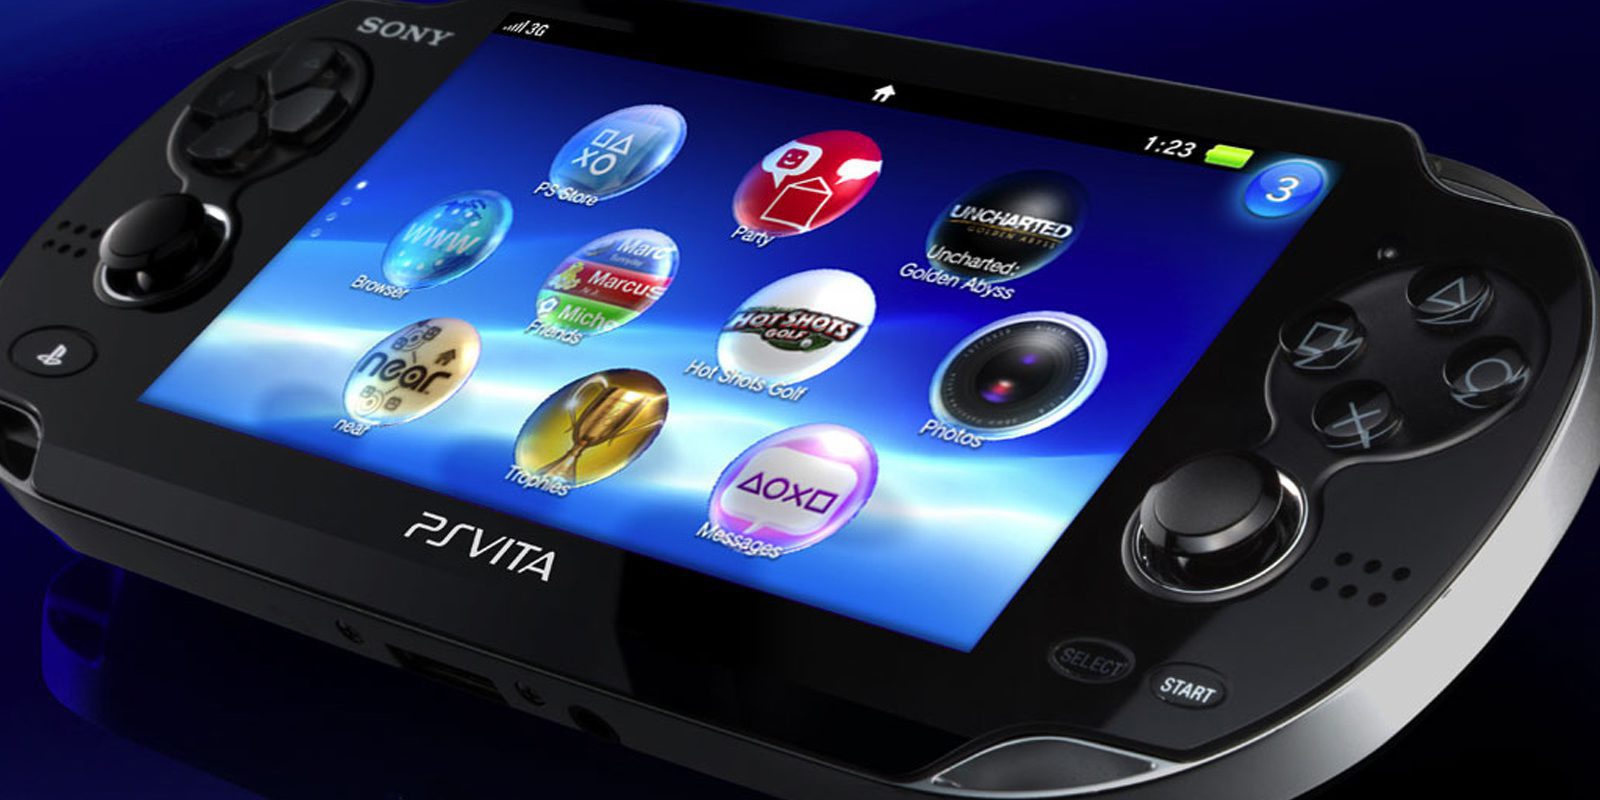 Jack Tretton, ex CEO de Sony: "PS Vita llegó tarde al mercado"